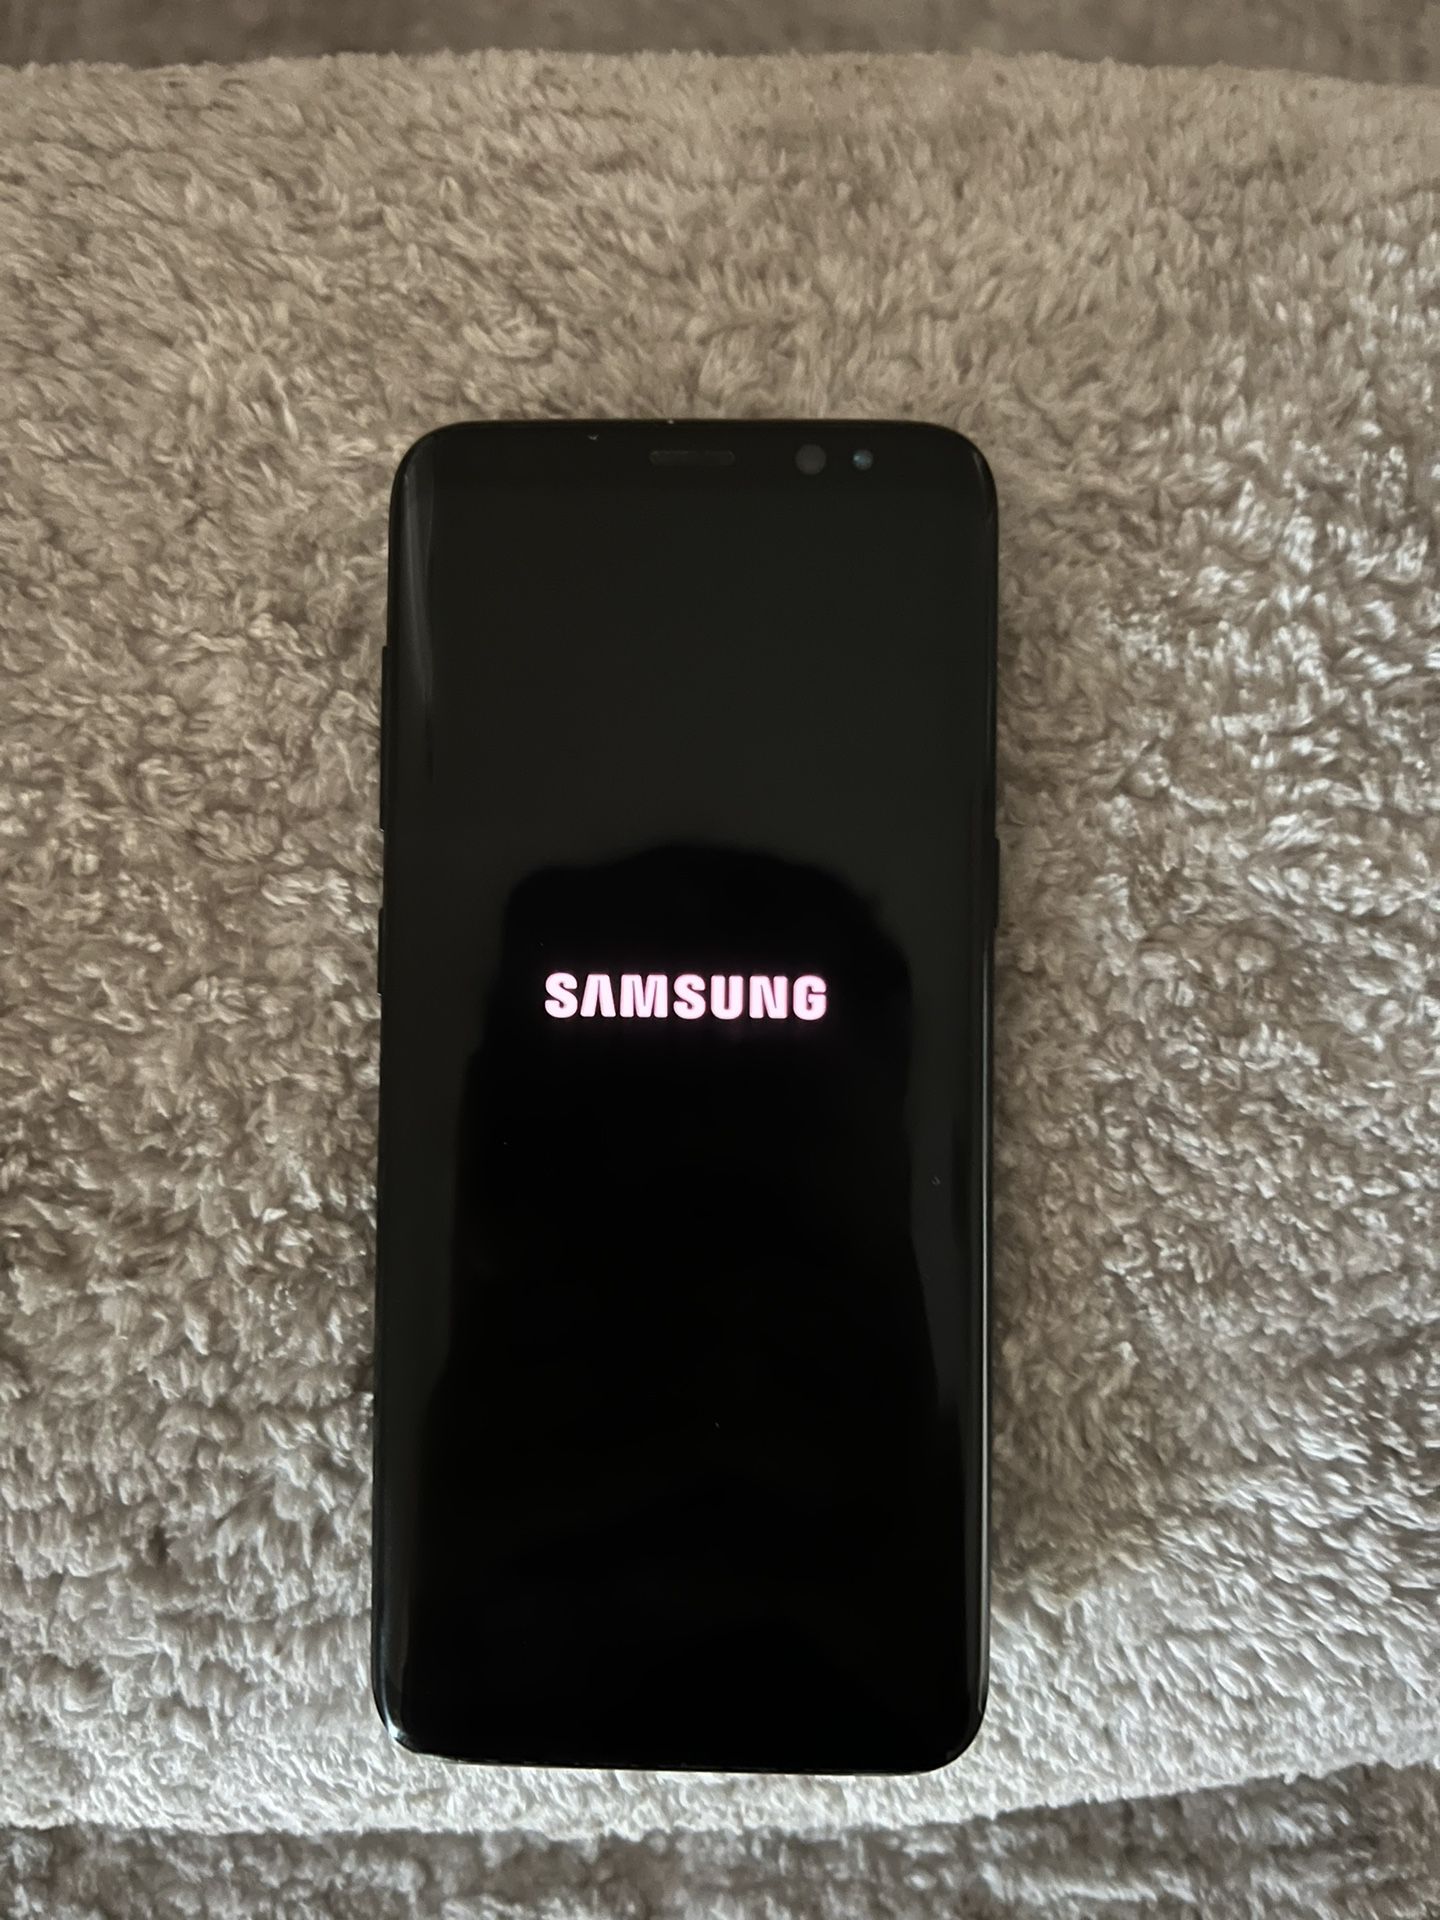 Samsung Galaxy s8 